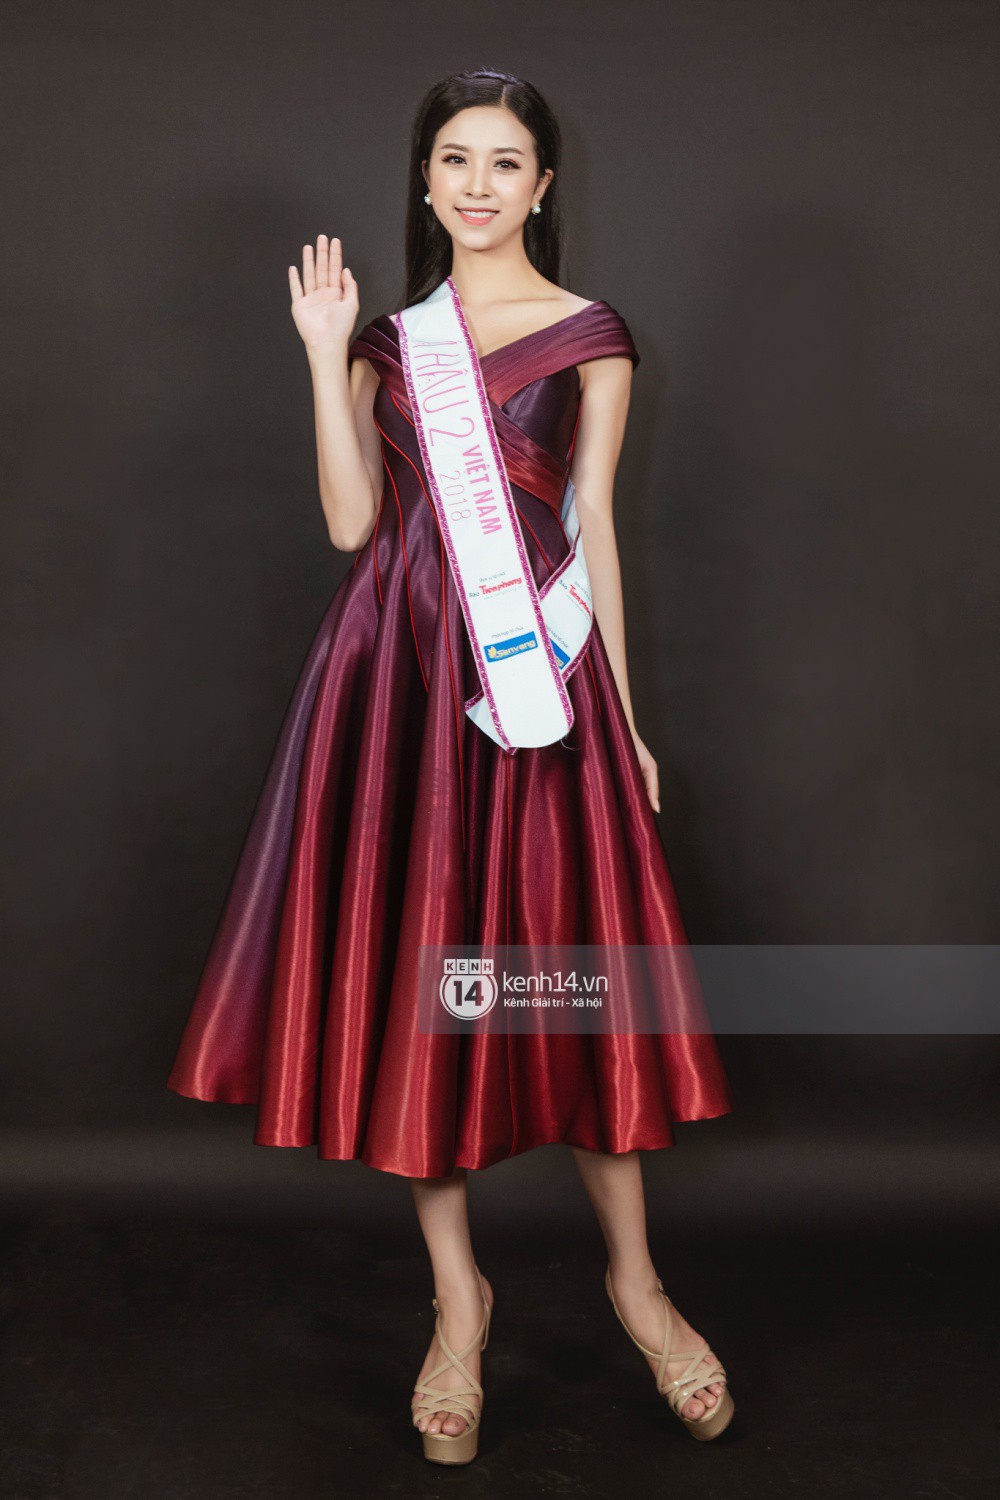 Ngắm cận vẻ đẹp của Top 3 Hoa hậu Việt Nam 2018: Mỹ nhân 2000 được khen sắc sảo, 2 nàng Á mười phân vẹn mười-12